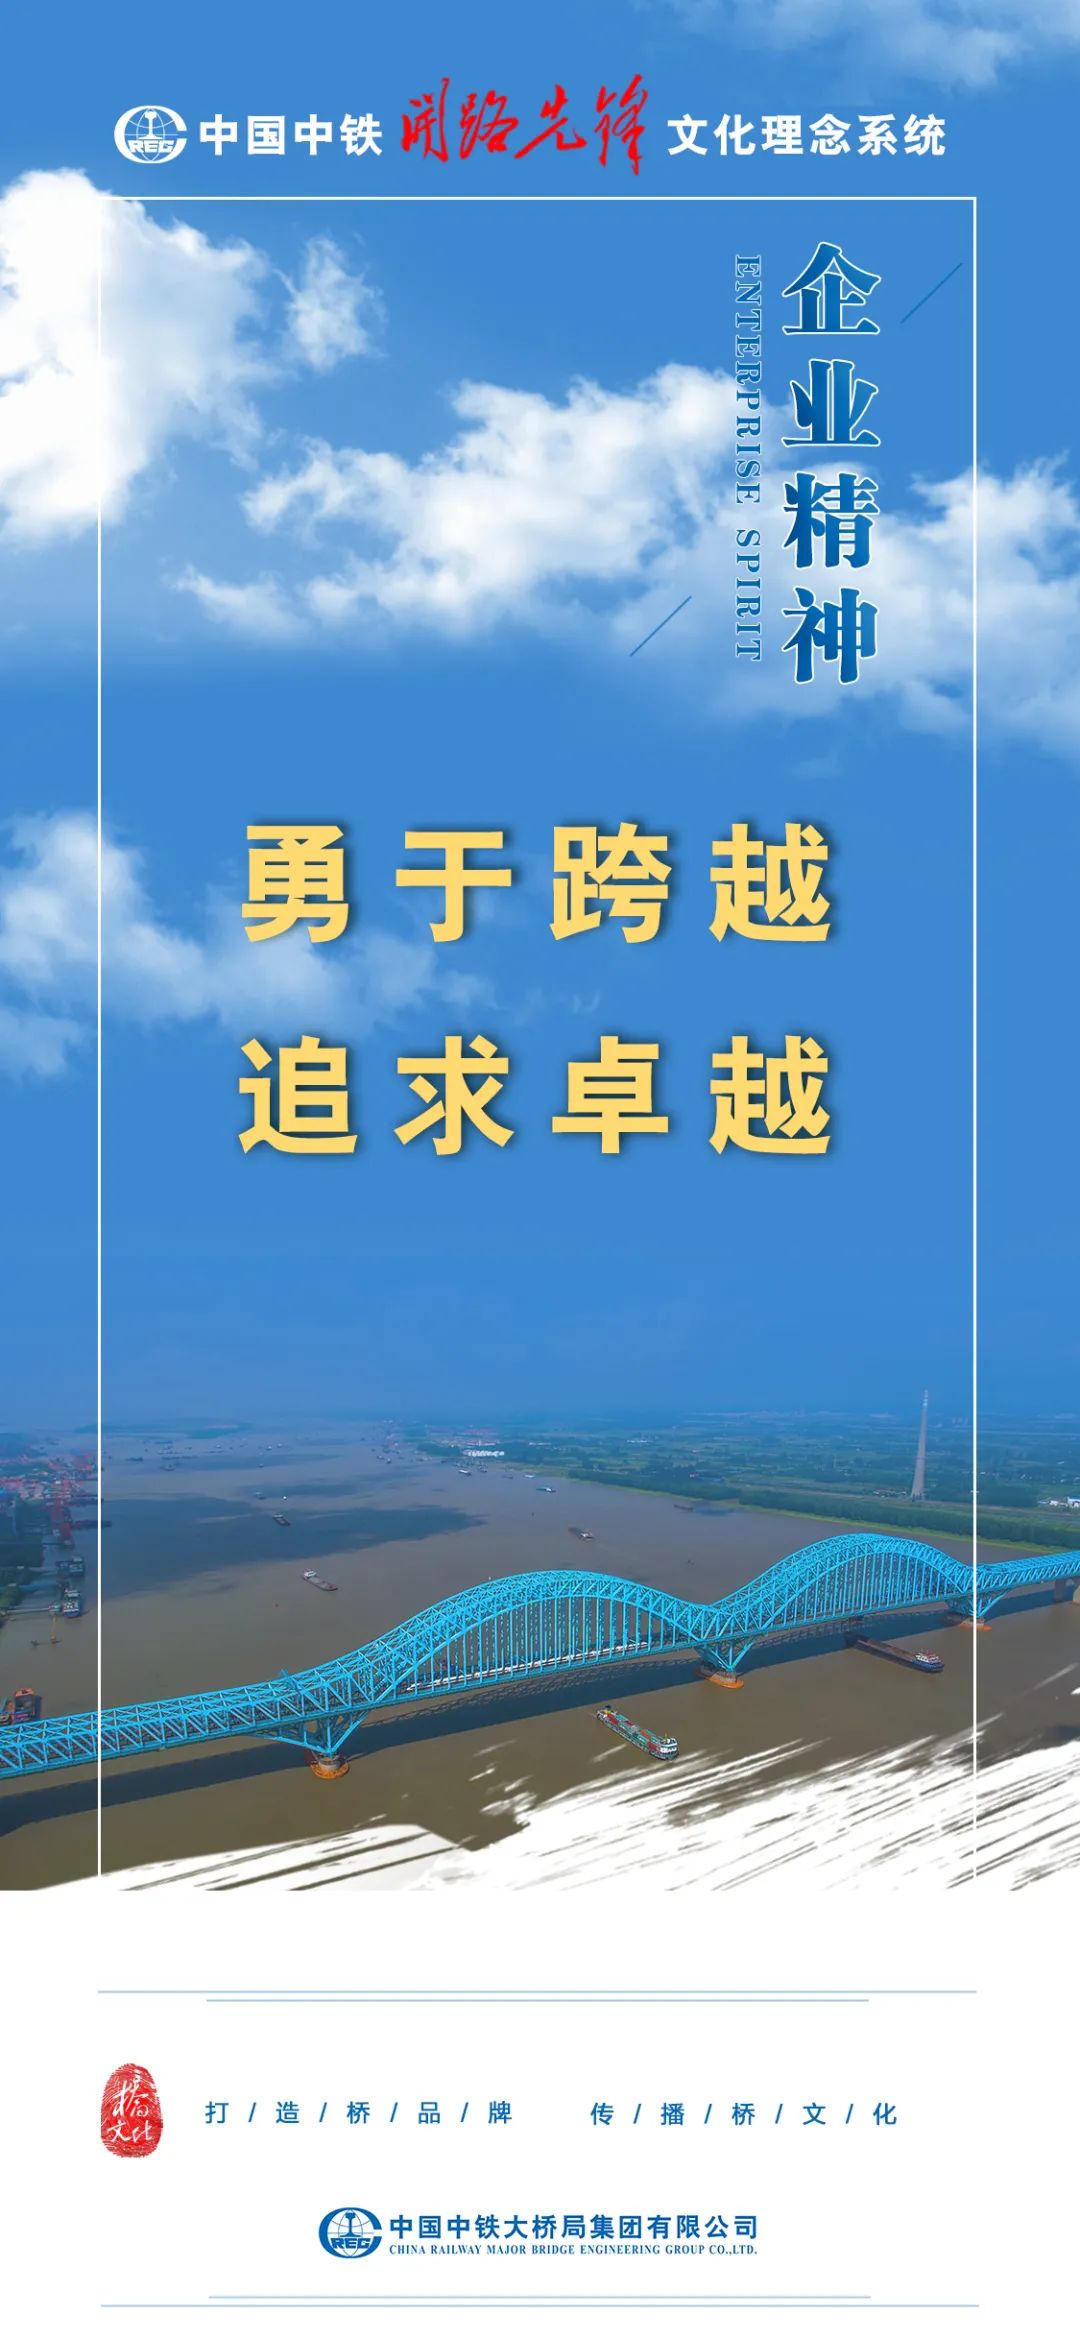 中铁大桥局推出中国中铁开路先锋文化理念宣传海报